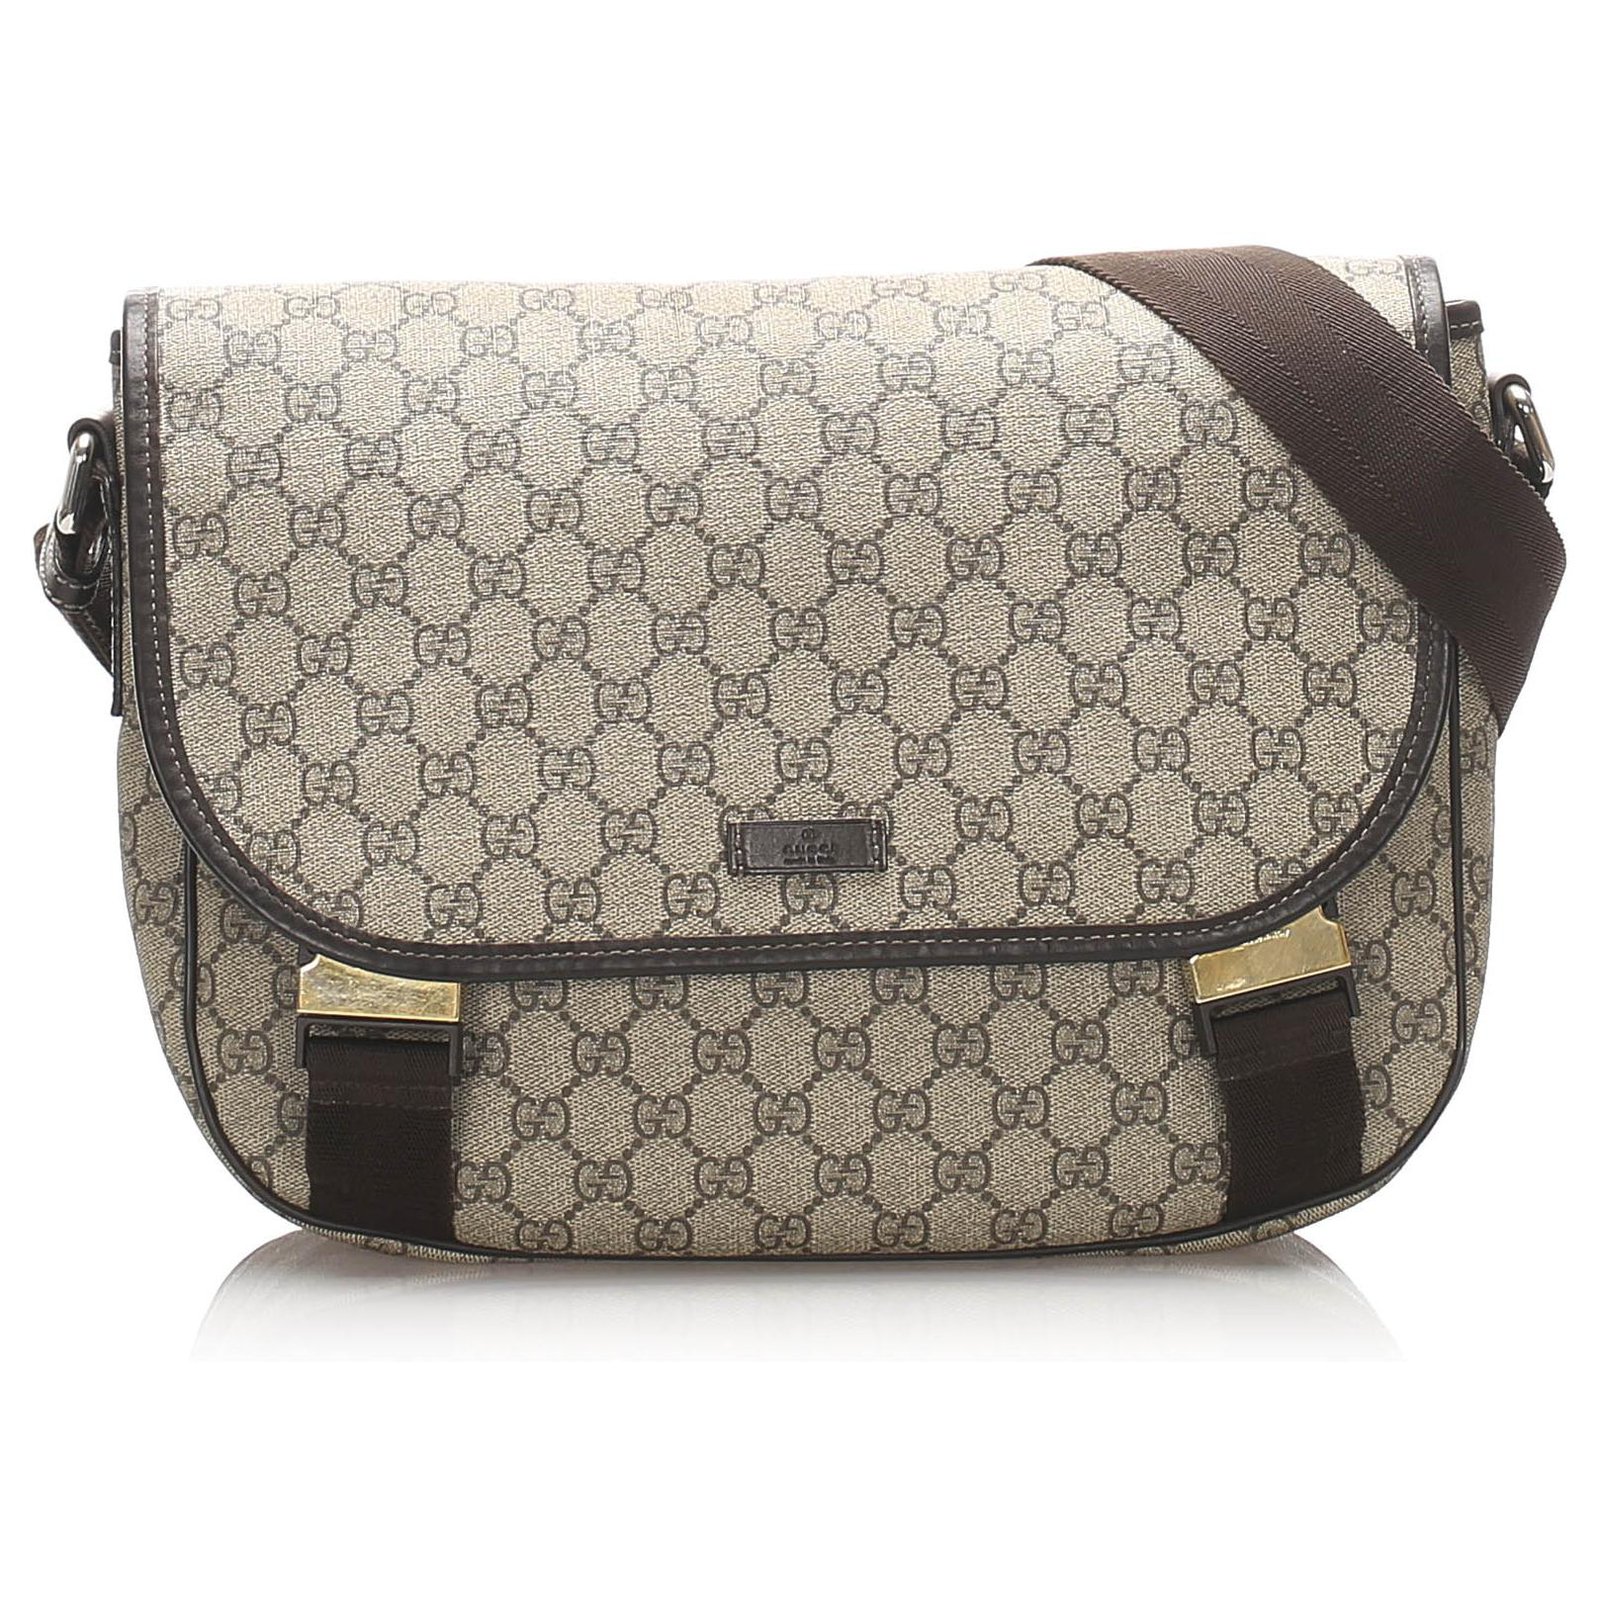 Gucci messenger bag : r/FashionReps